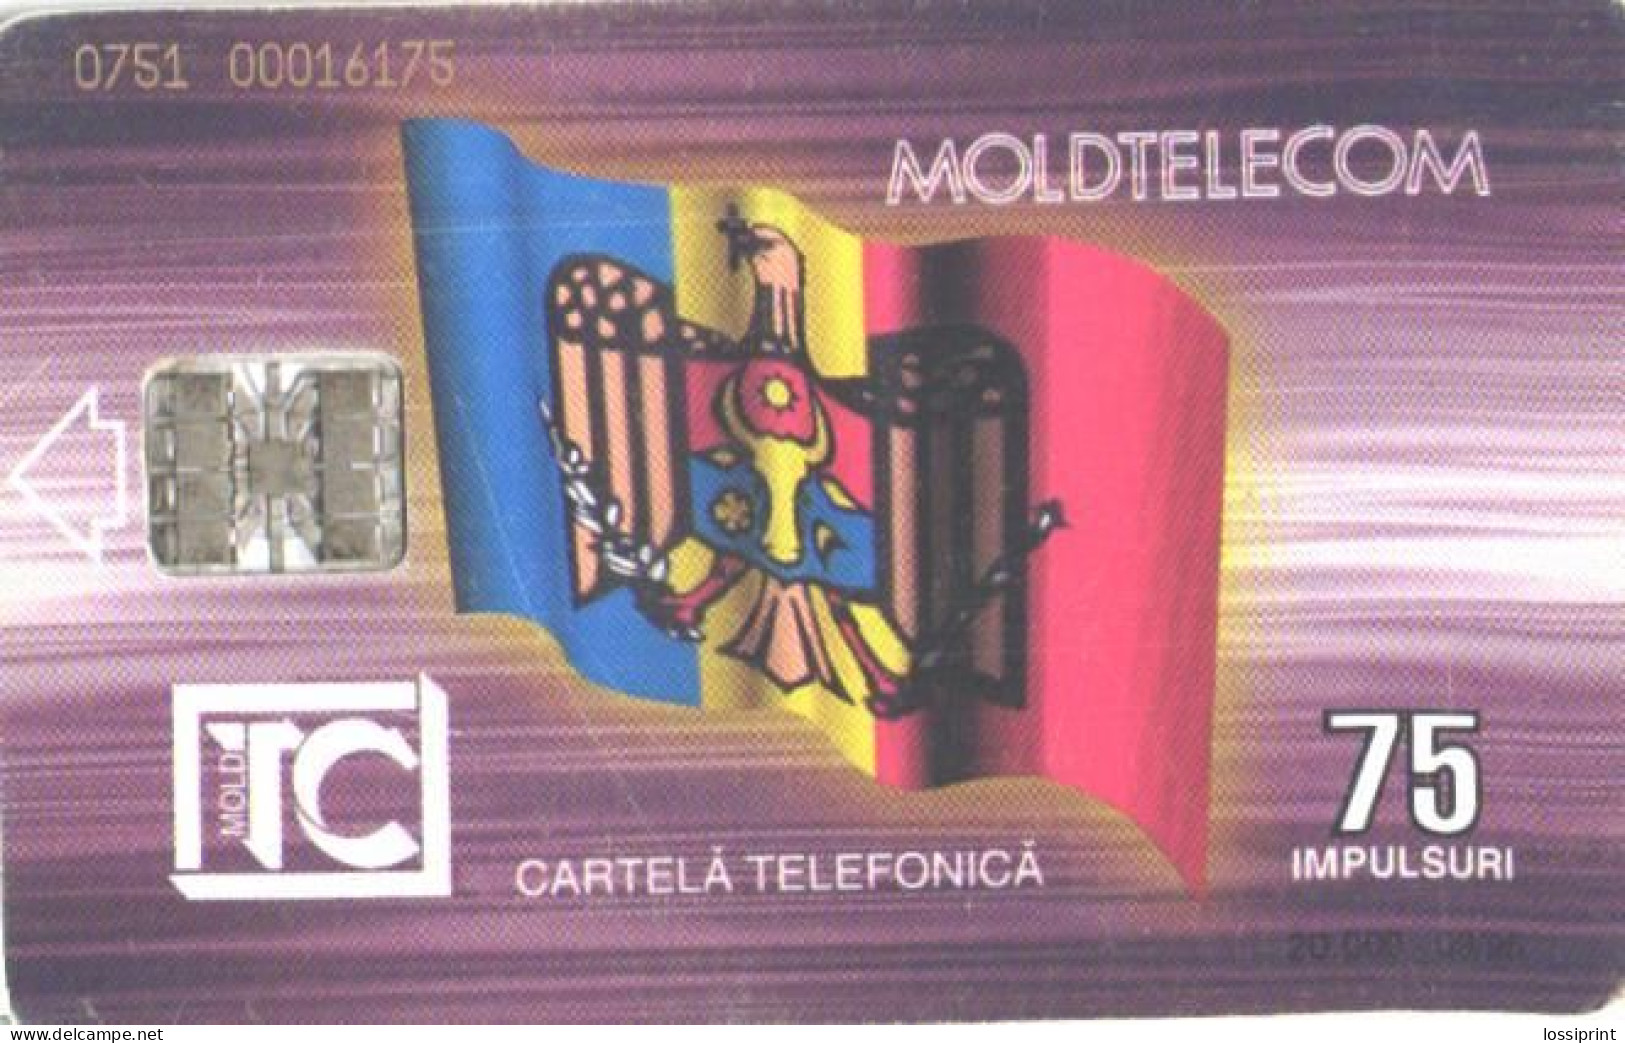 Moldova:Used Phonecard, Moldtelecom, 75 Impulses, Building, 1995 - Moldavië